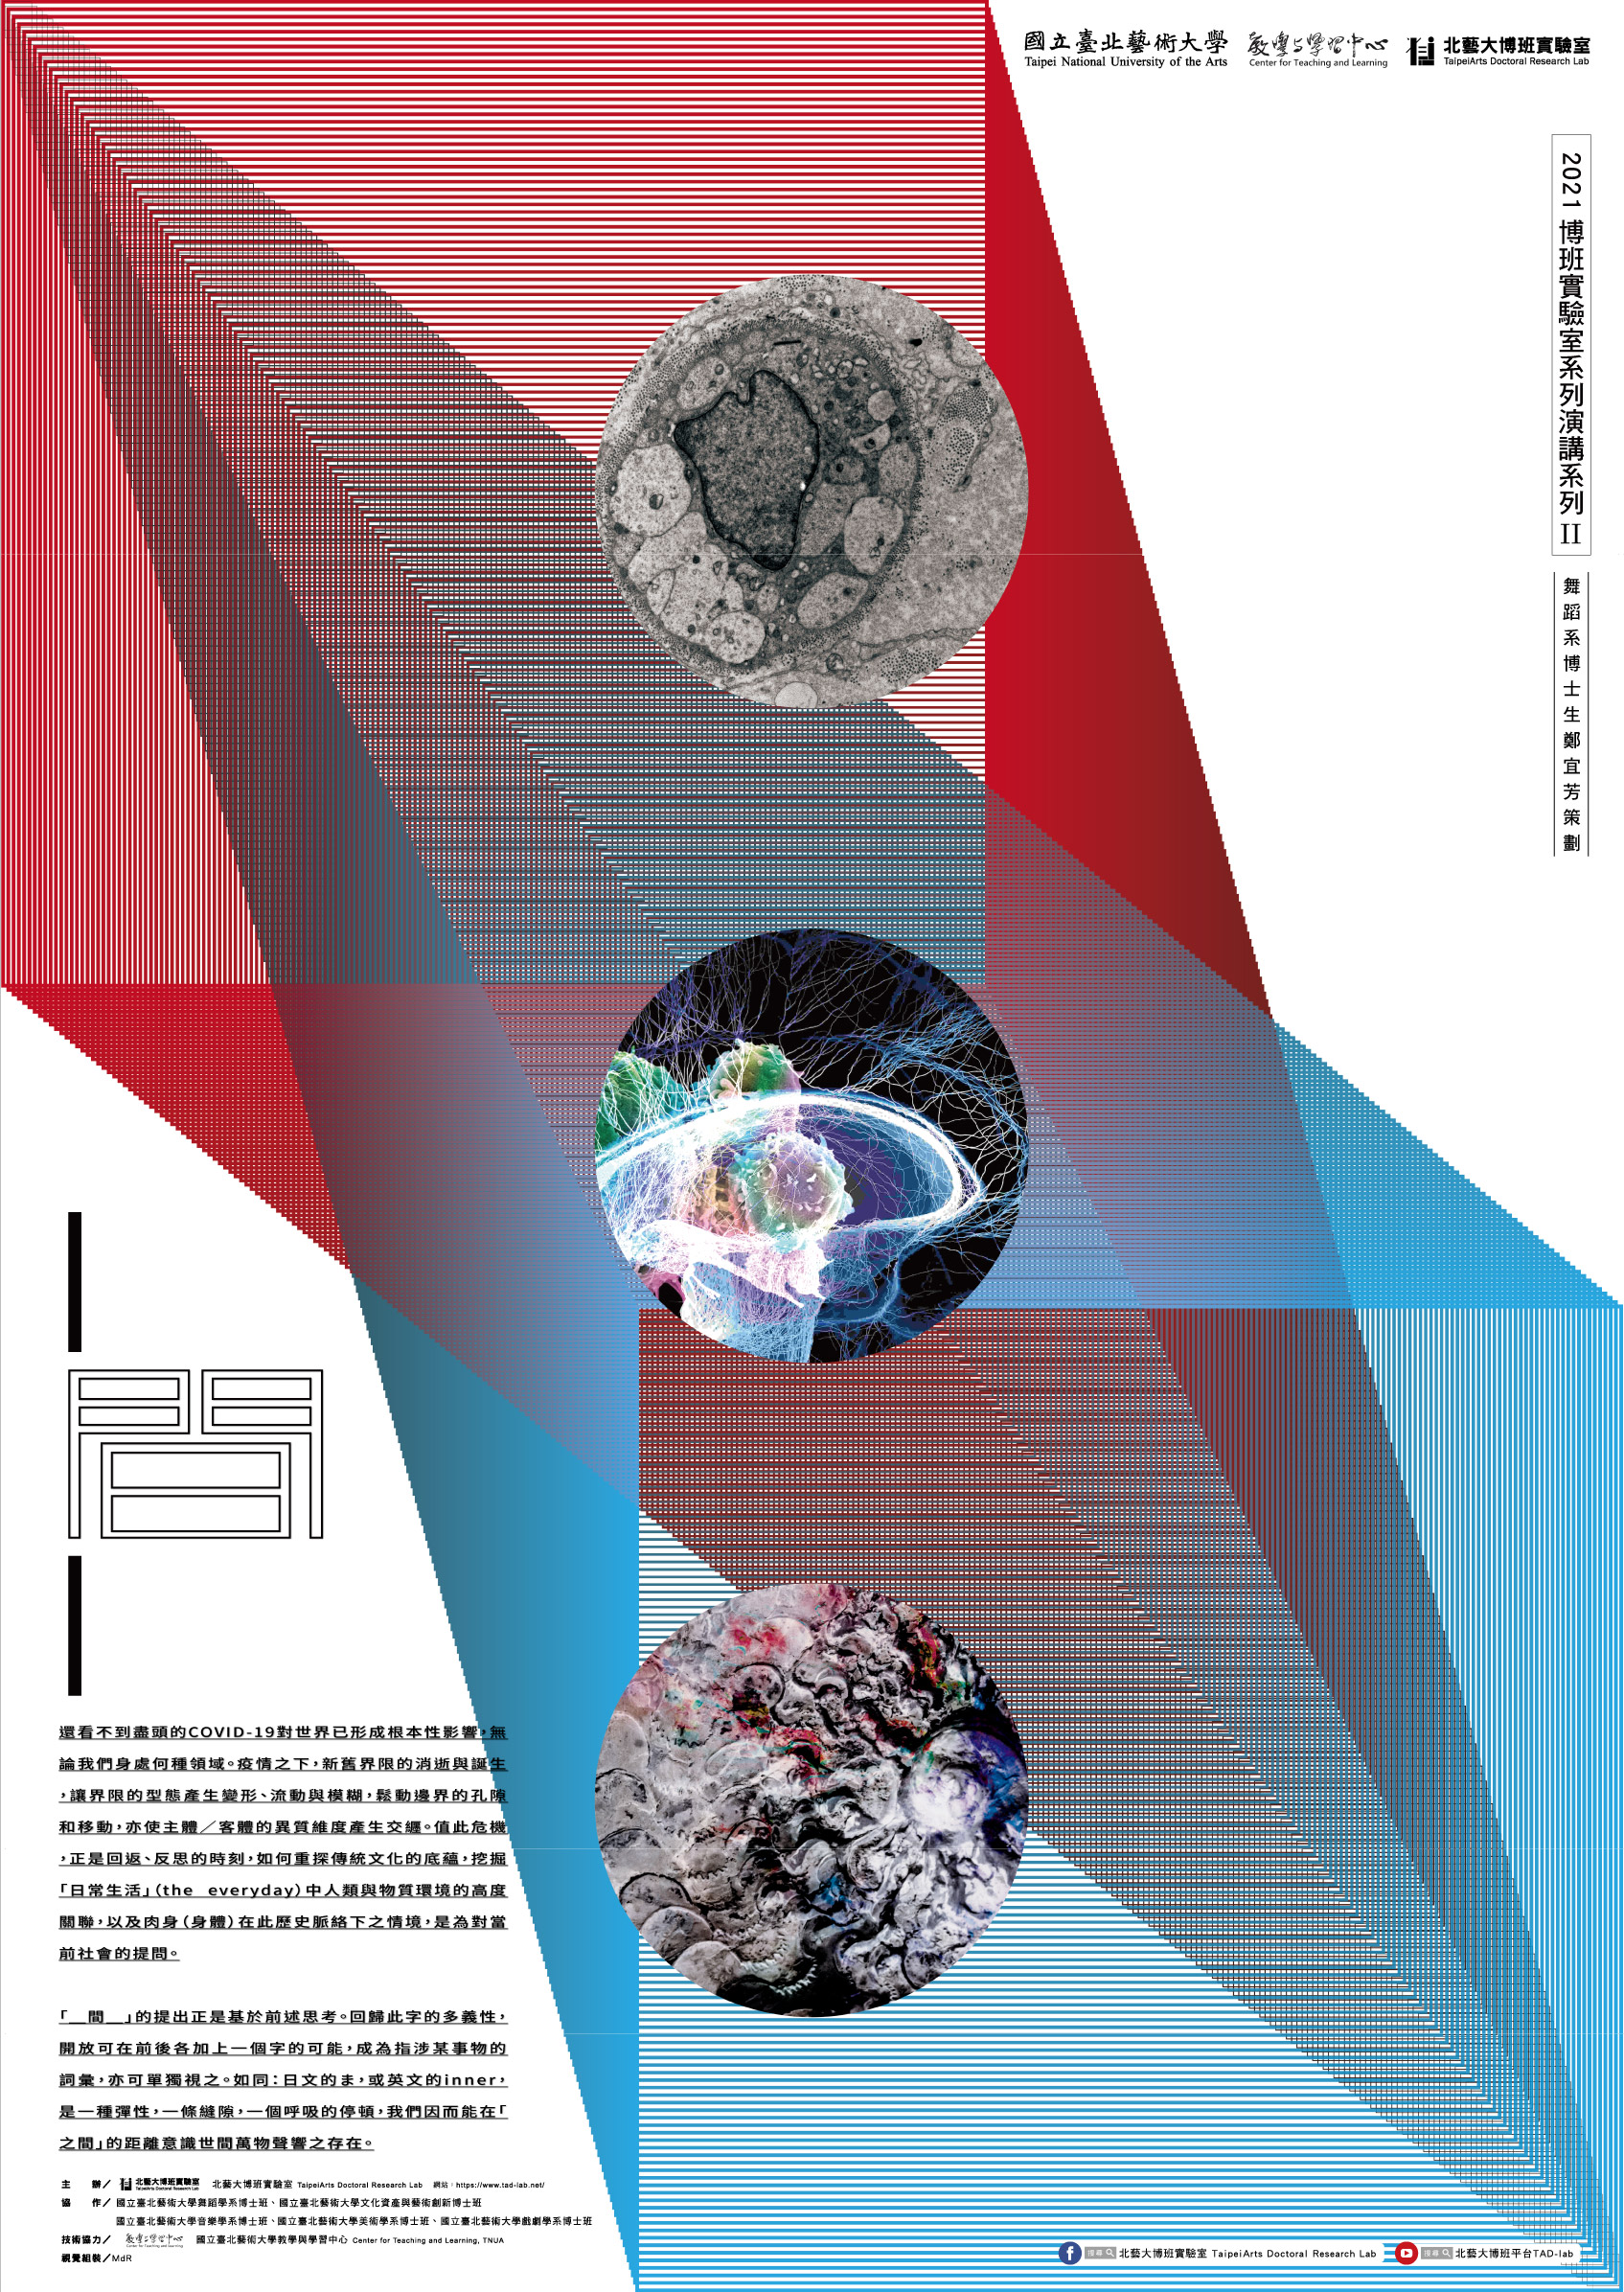 北藝大博班實驗室-110-1系列講座-海報.jpg